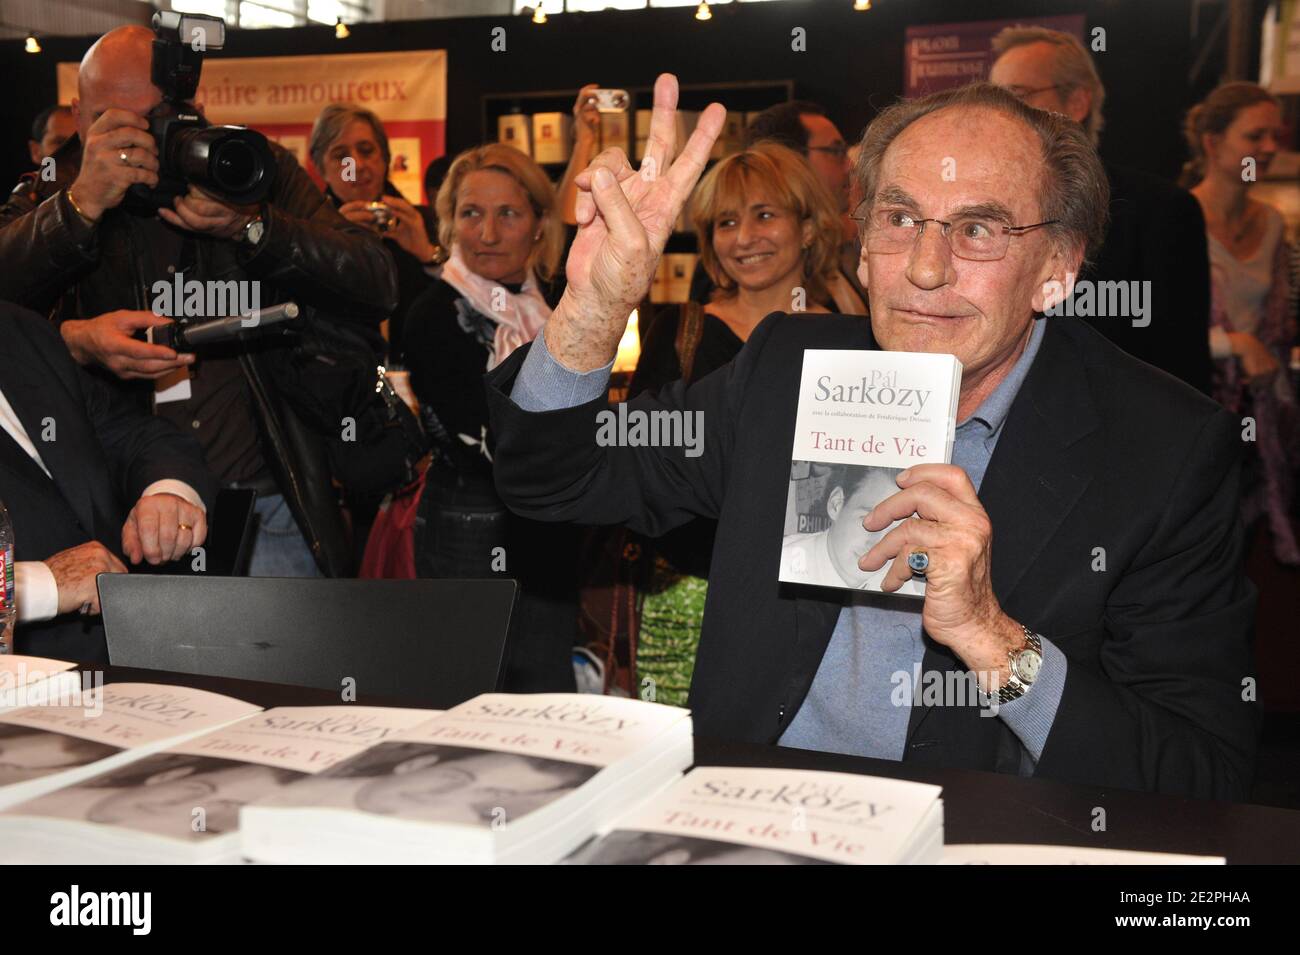 Pal Sarkozy signing copies of his book during 30th Paris Book Fair (Salon du Livre de Paris) held at the Parc des Expositions, Porte de Versailles in Paris, France on March 28, 2010. Photo by Briquet-Gorassini/ABACAPRESS.COM Stock Photo